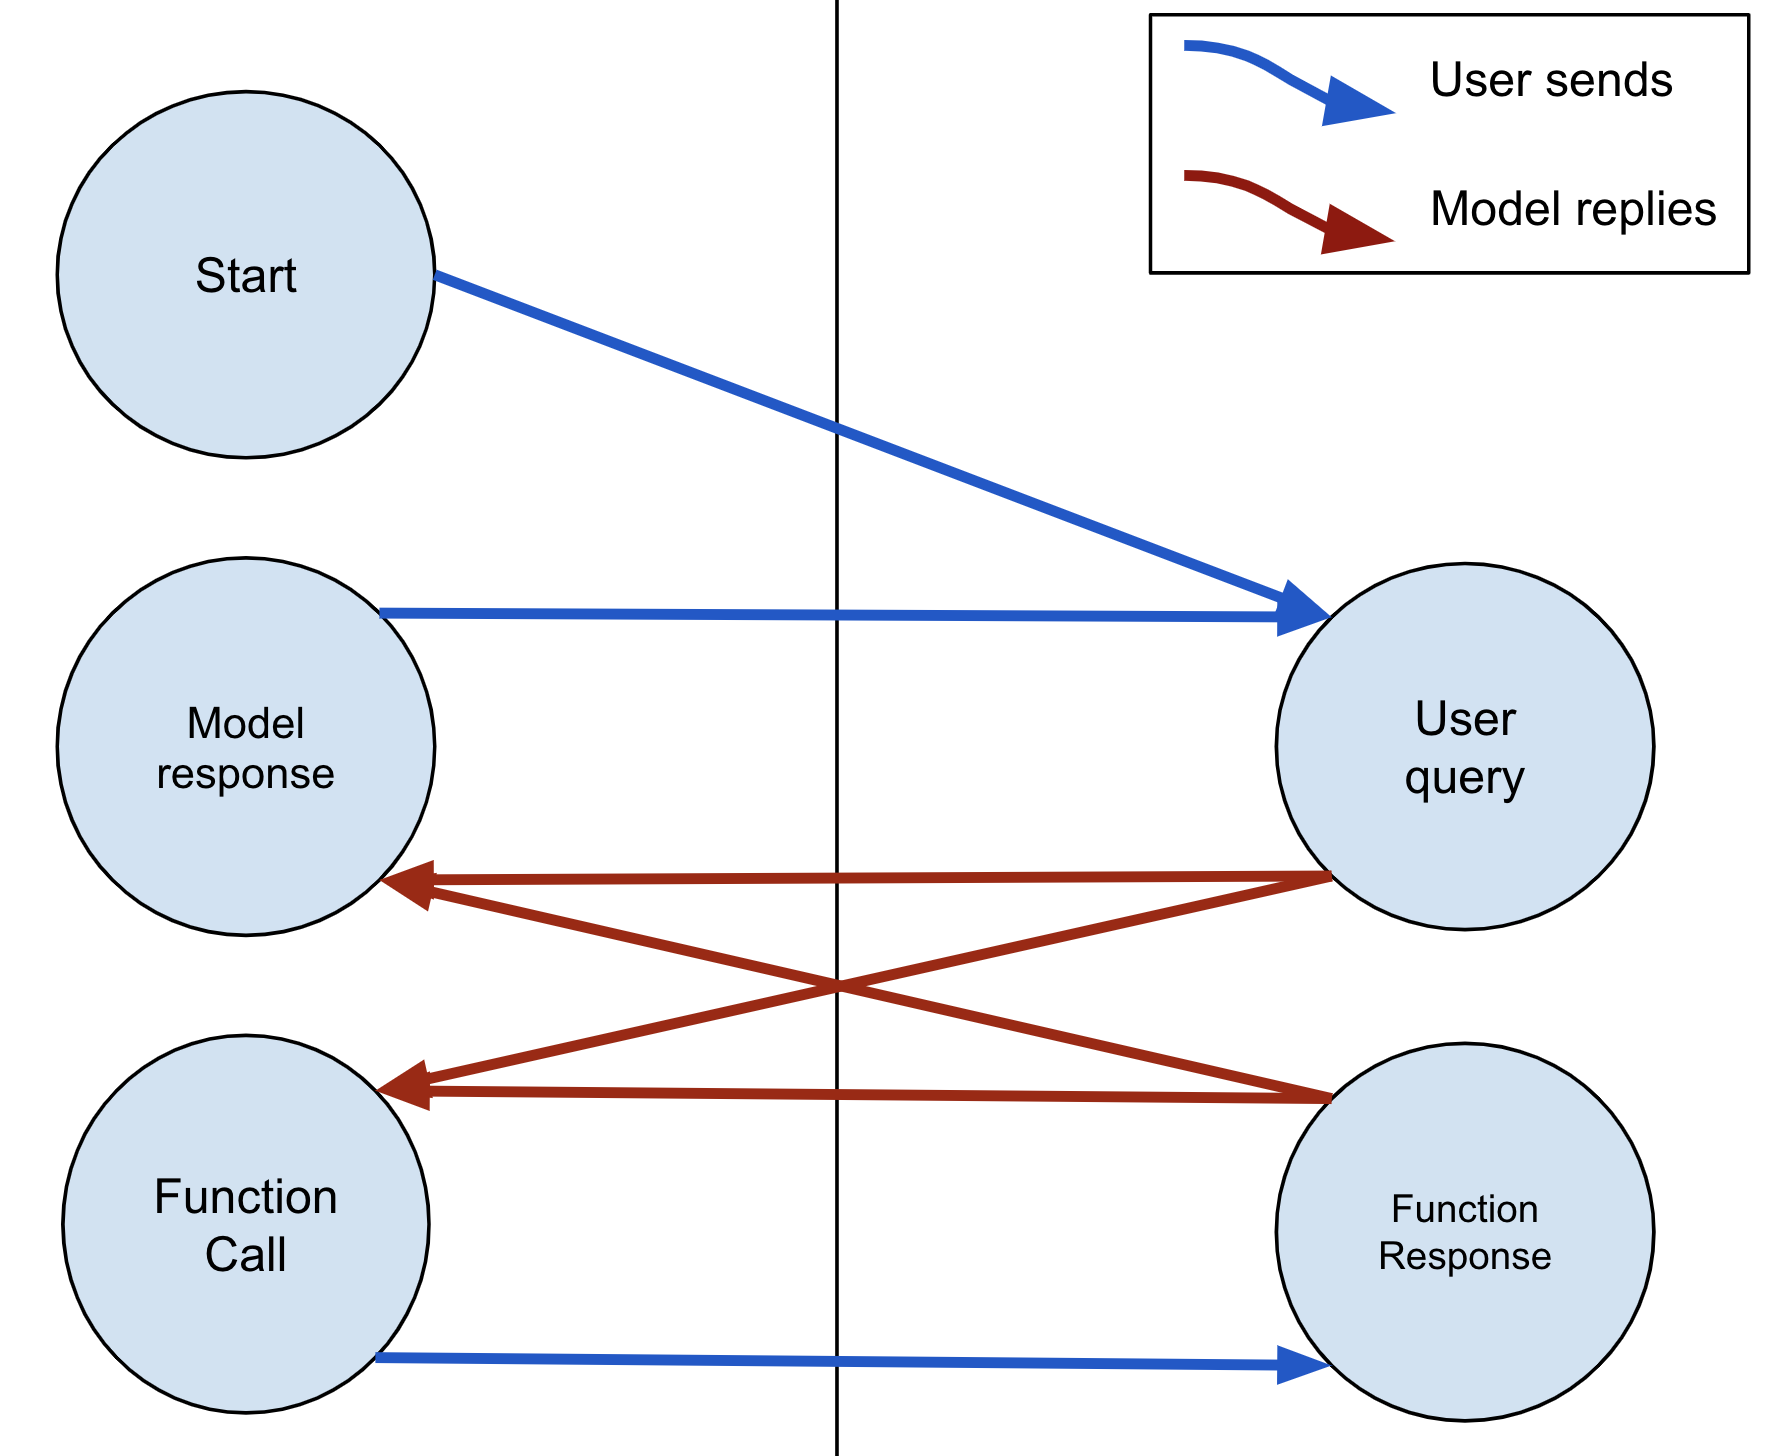 मॉडल कभी भी टेक्स्ट या FunctionCall का जवाब दे सकता है. अगर मॉडल कोई FunctionCall भेजता है, तो उपयोगकर्ता को FunctionResponse से जवाब देना होगा